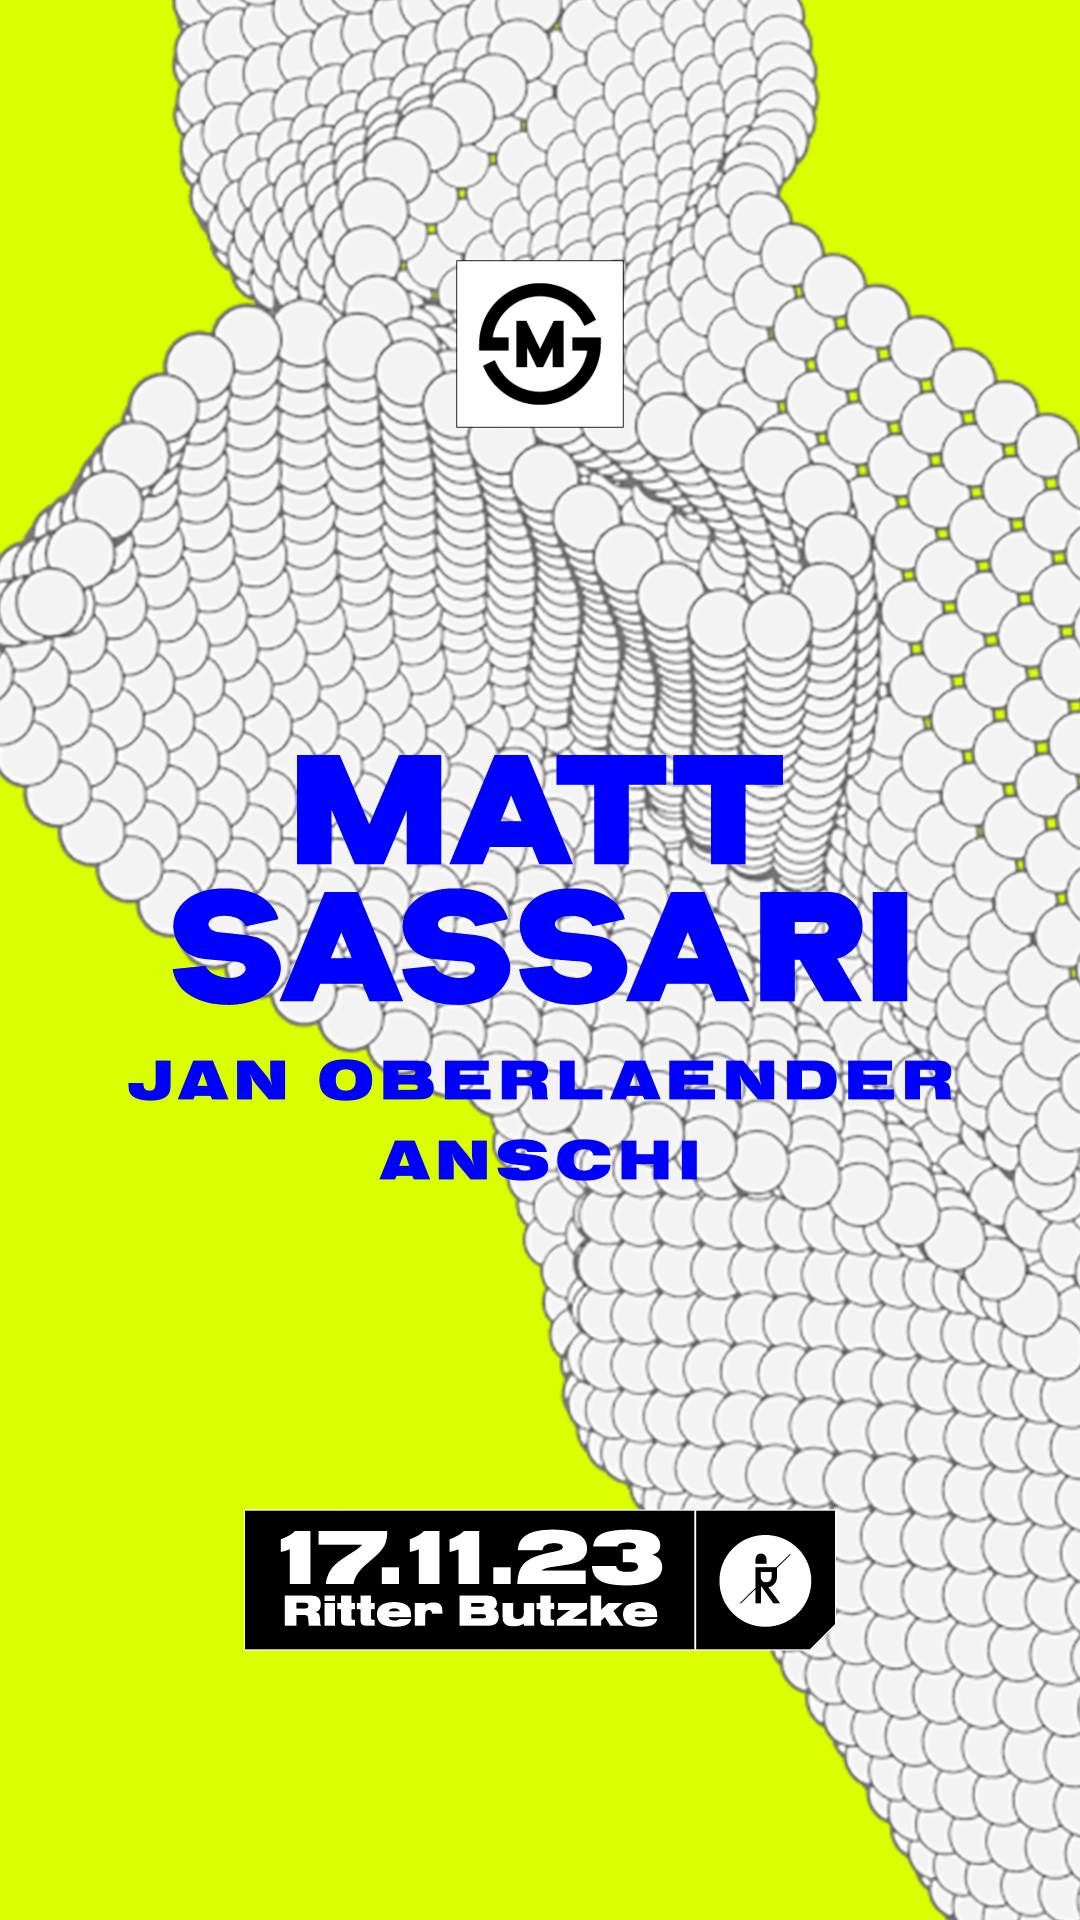 Matt Sassari & Jan Oberlaender - Página trasera